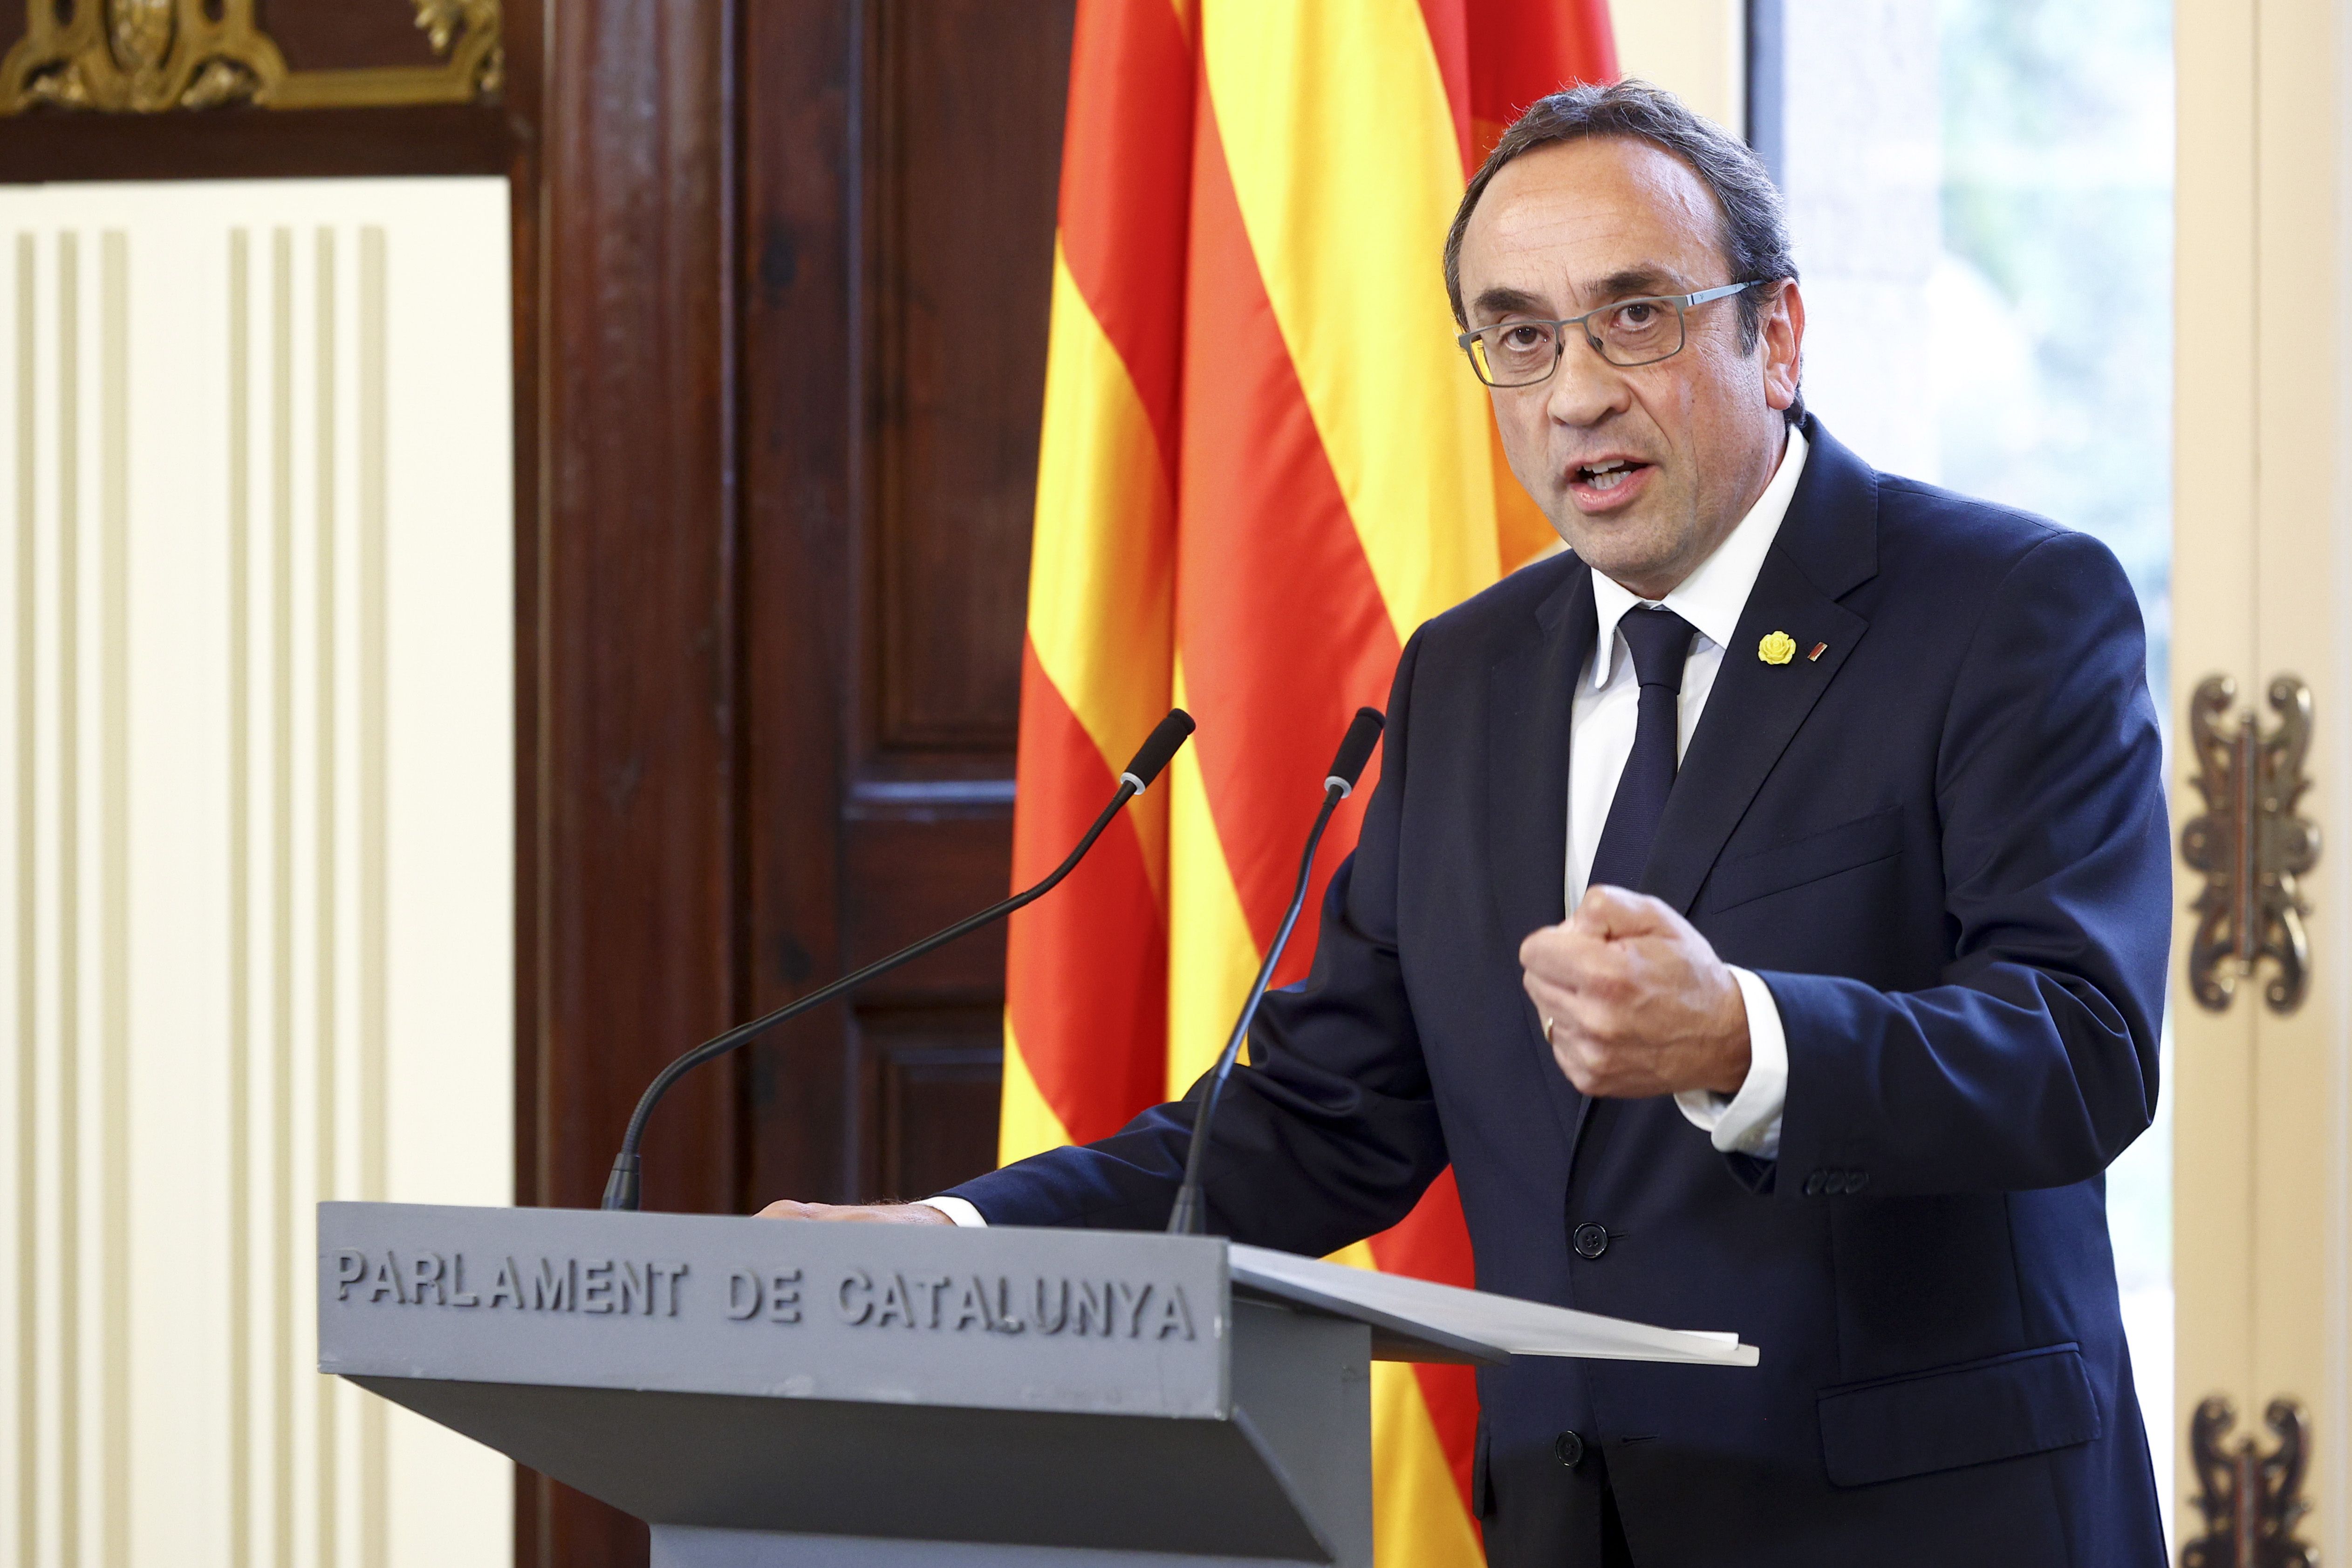 Josep Rull Kataluniako Parlamentuko presidentea, gaur, alderdiekin mintzatu ostean egin duen agerraldian. QUIQUE GARCIA / EFE